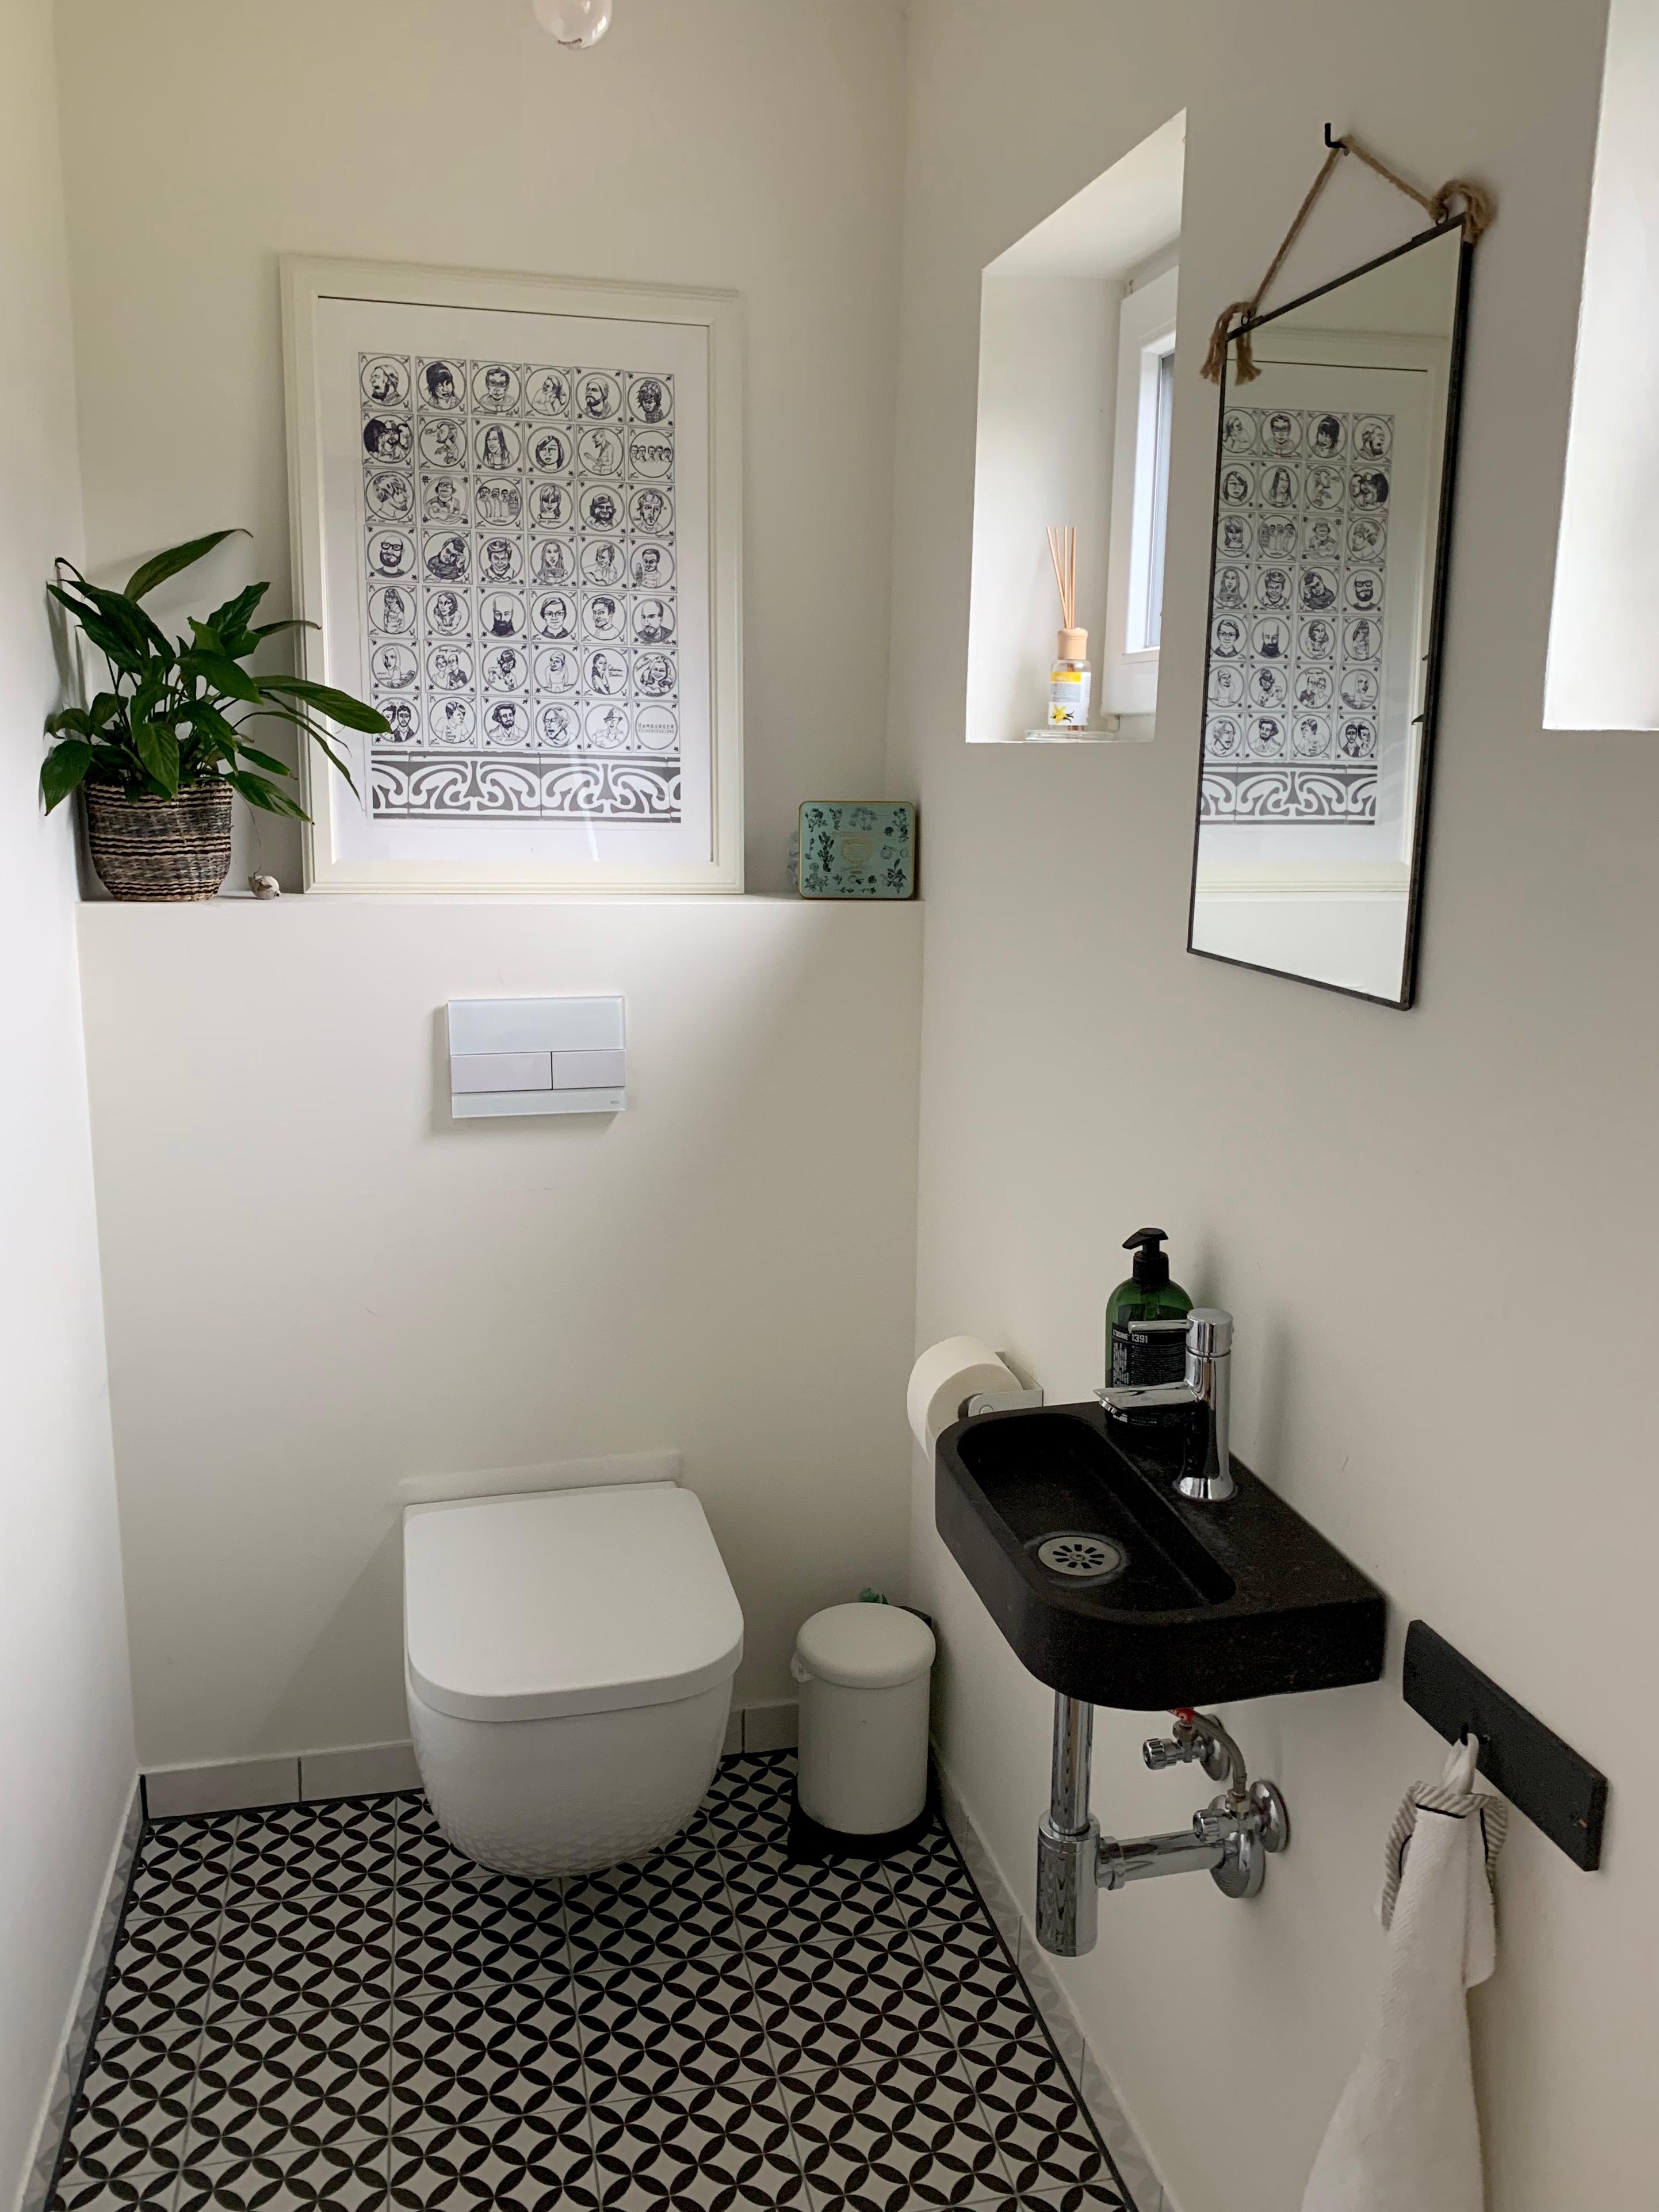 Badezimmer 
#badinspo - Zementfliesen sind aufgrund der niedrigen Decken ausgeschieden. Aber es gibt Alternativen...